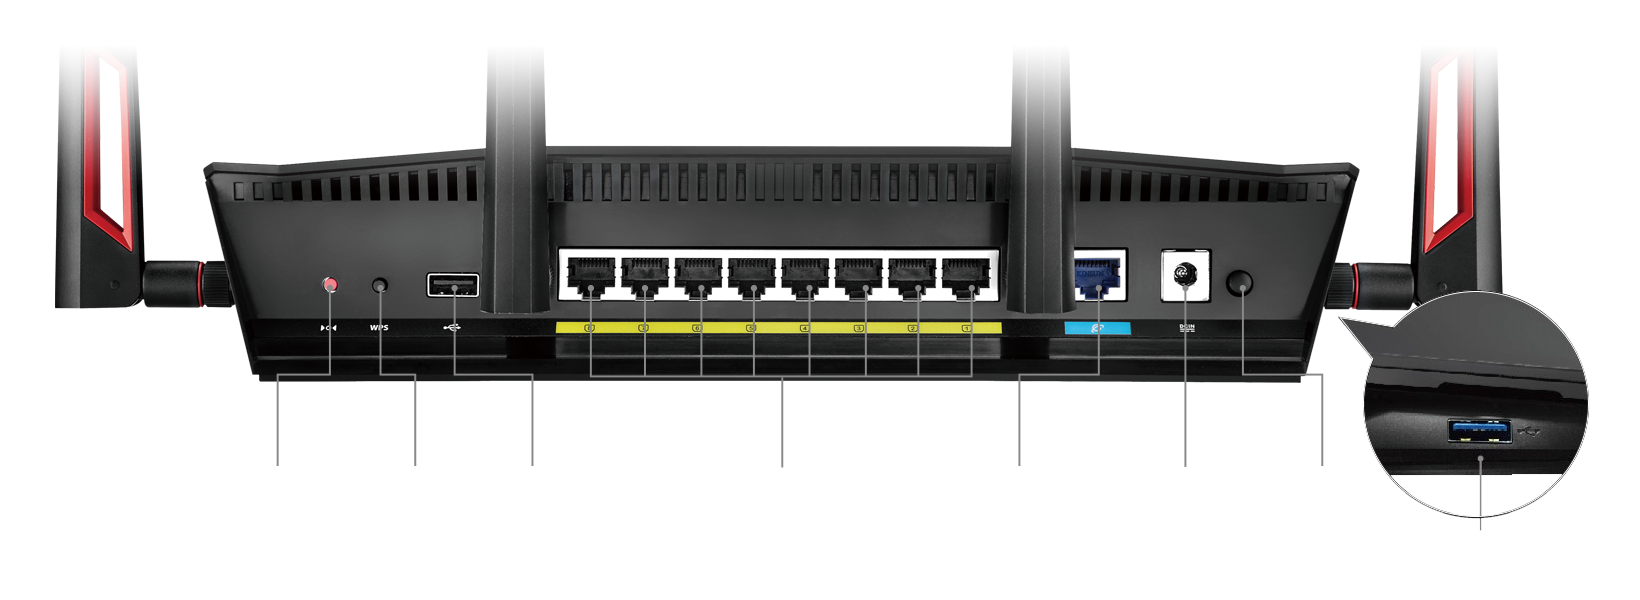 8 Gigabit-LAN-Schnittstellen – zweimal so viele im Vergleich zu den meisten Routern – machen den RT-AC88U zu Ihrer digitalen Schaltzentrale im Heimnetzwerk